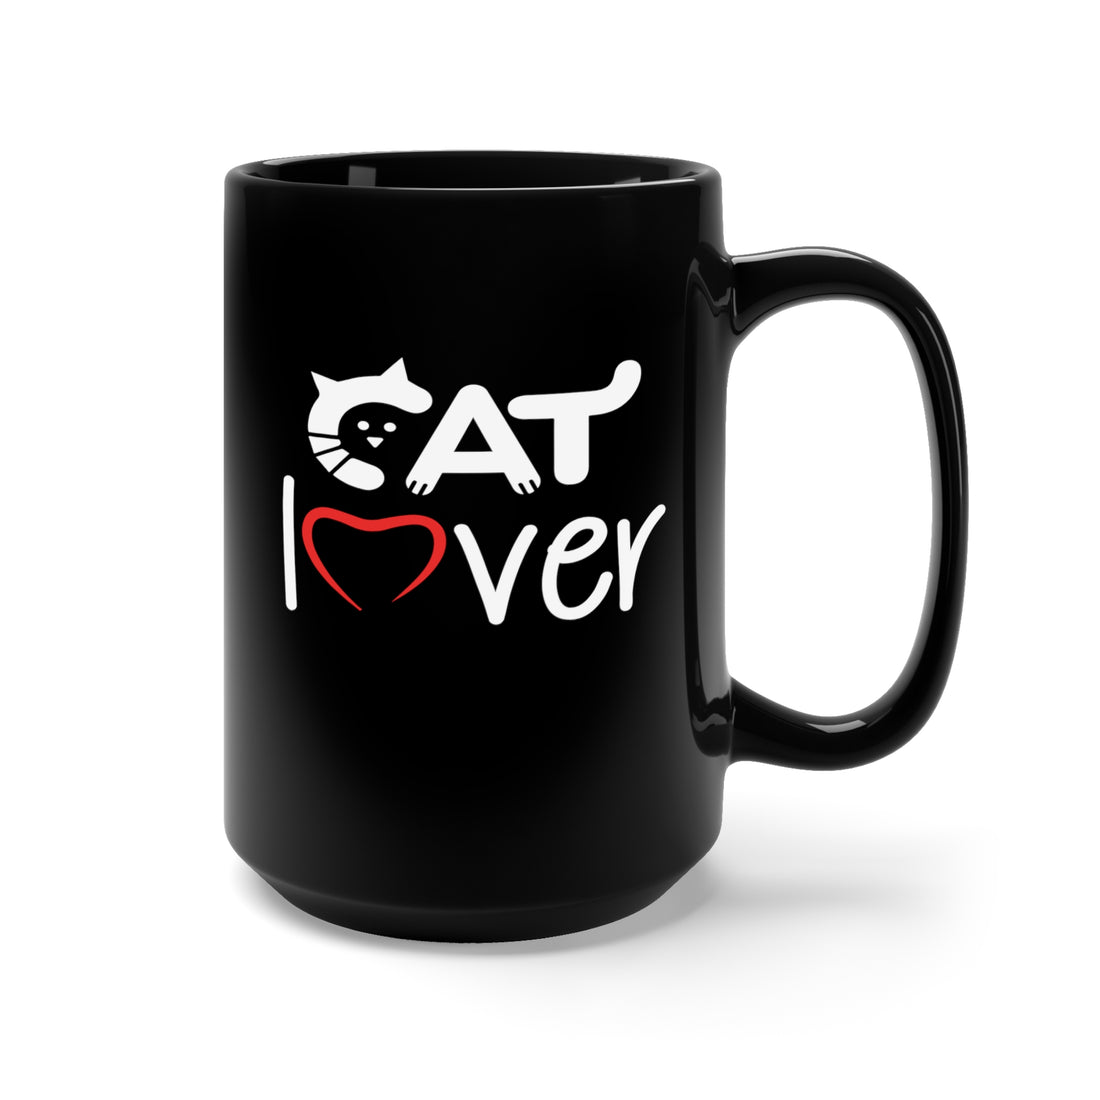 Cat Lover - Large 15oz Black Mug